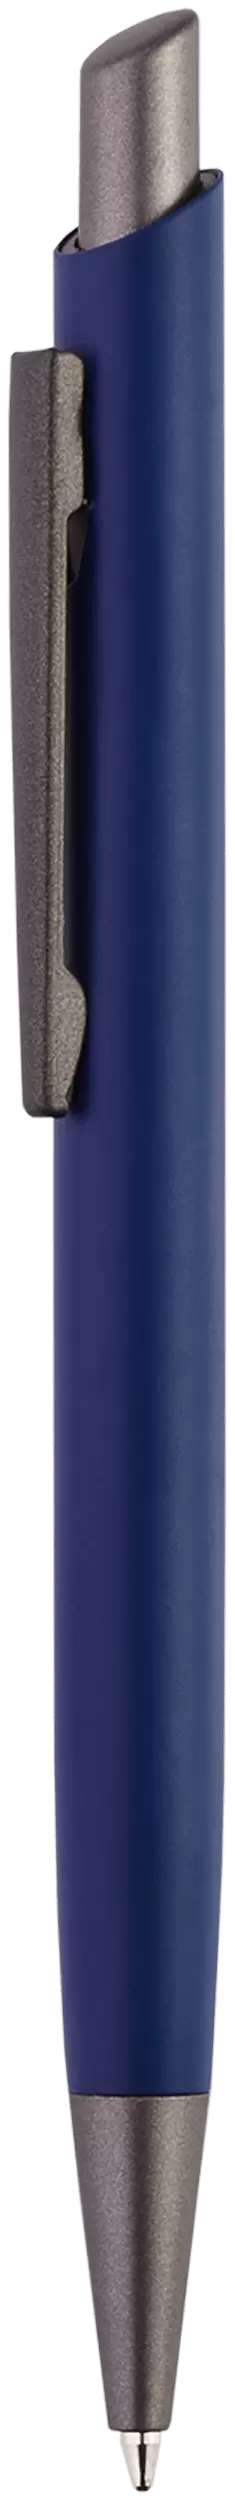 Ручка ELFARO TITAN Темно-синяя 3052.14